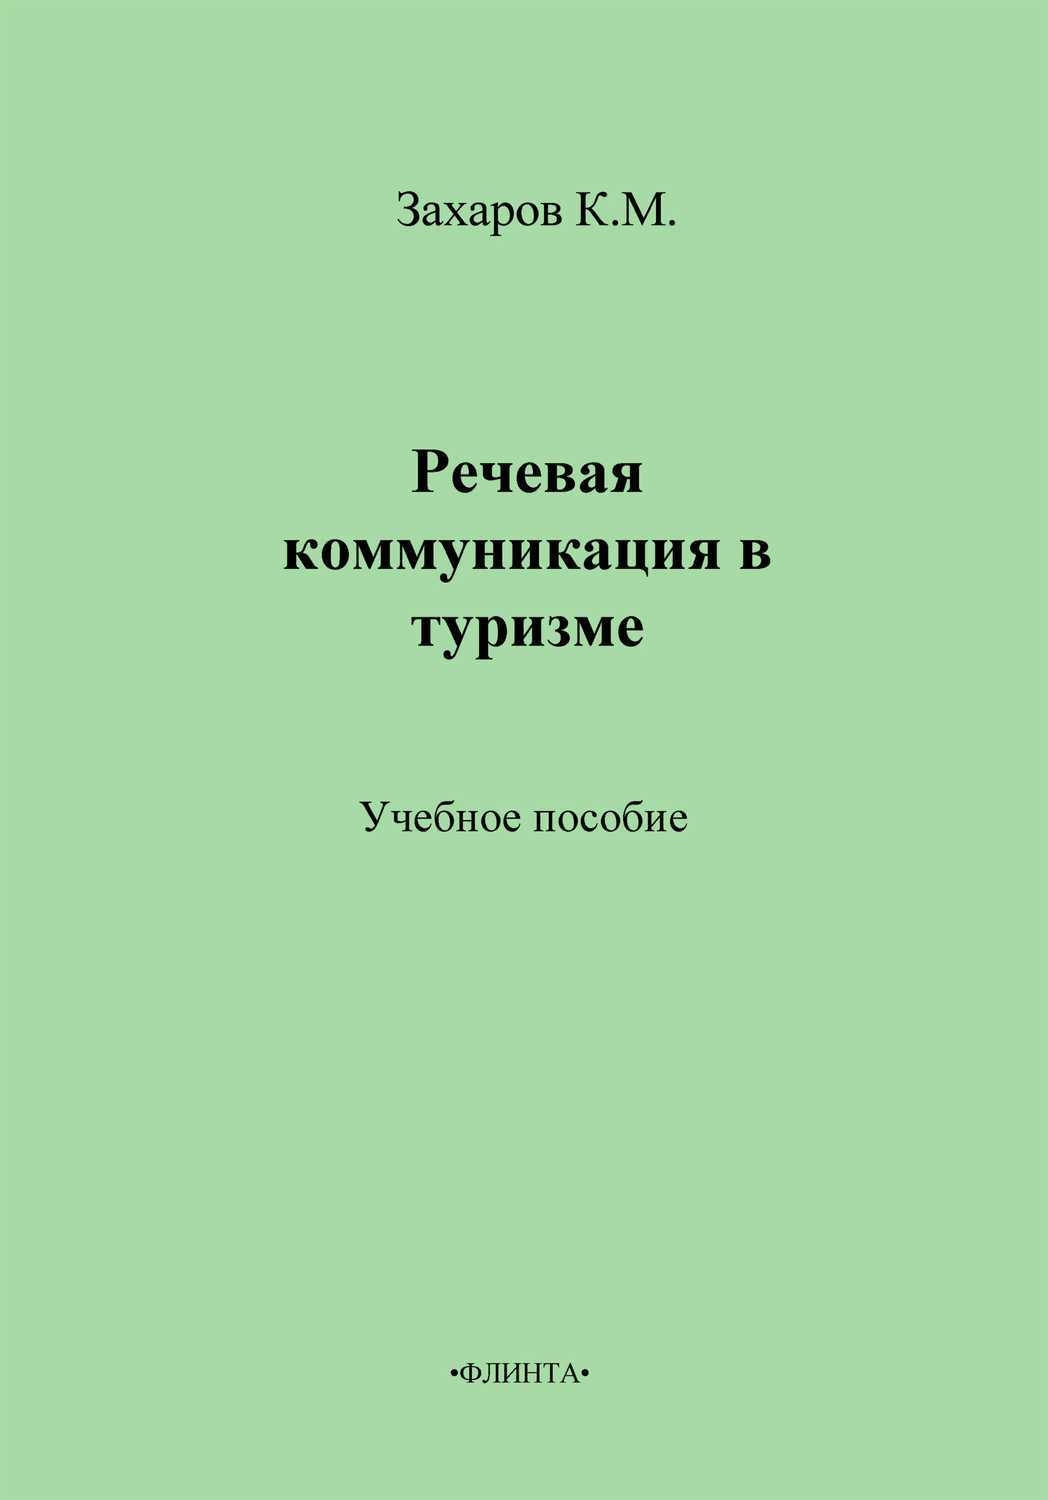 К. М. Захаров - «Речевая коммуникация в туризме. Учебное пособие»